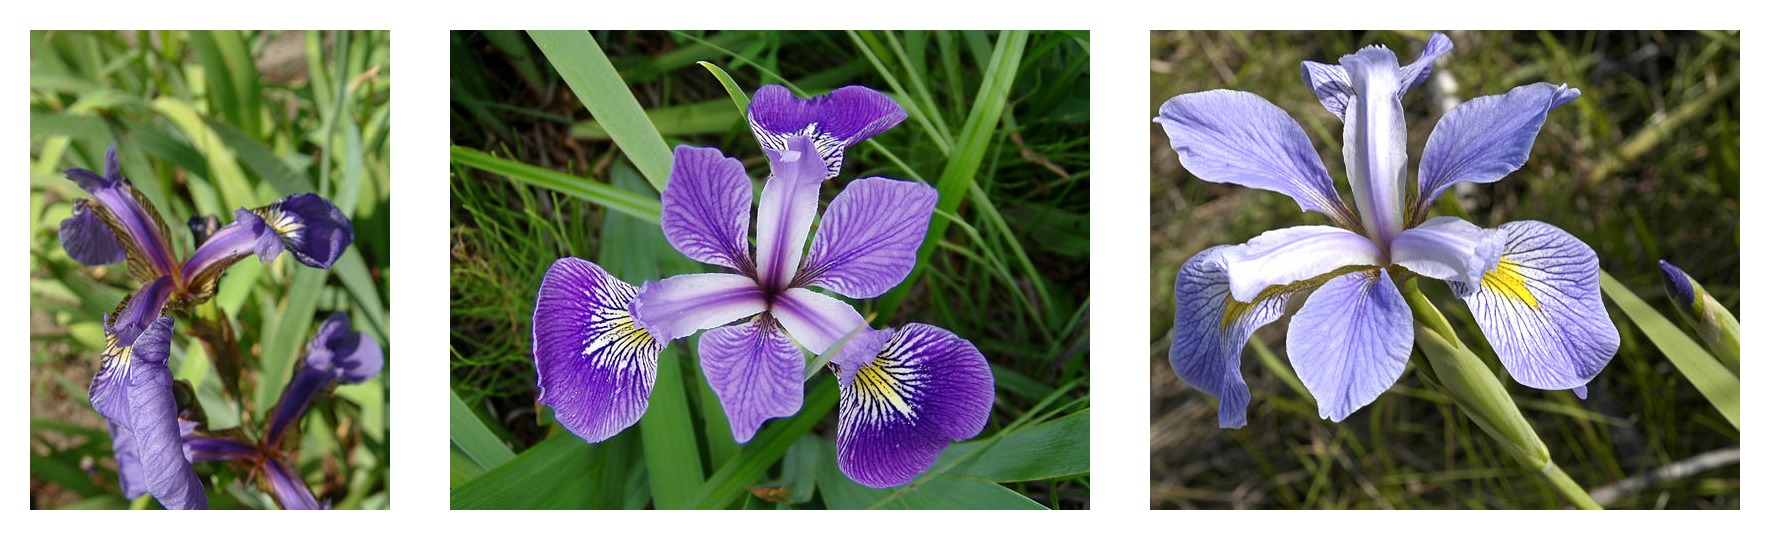 세 가지 붓꽃 종에 대한 꽃잎 기하학 비교: Iris setosa, Iris virginica, Iris versicolor